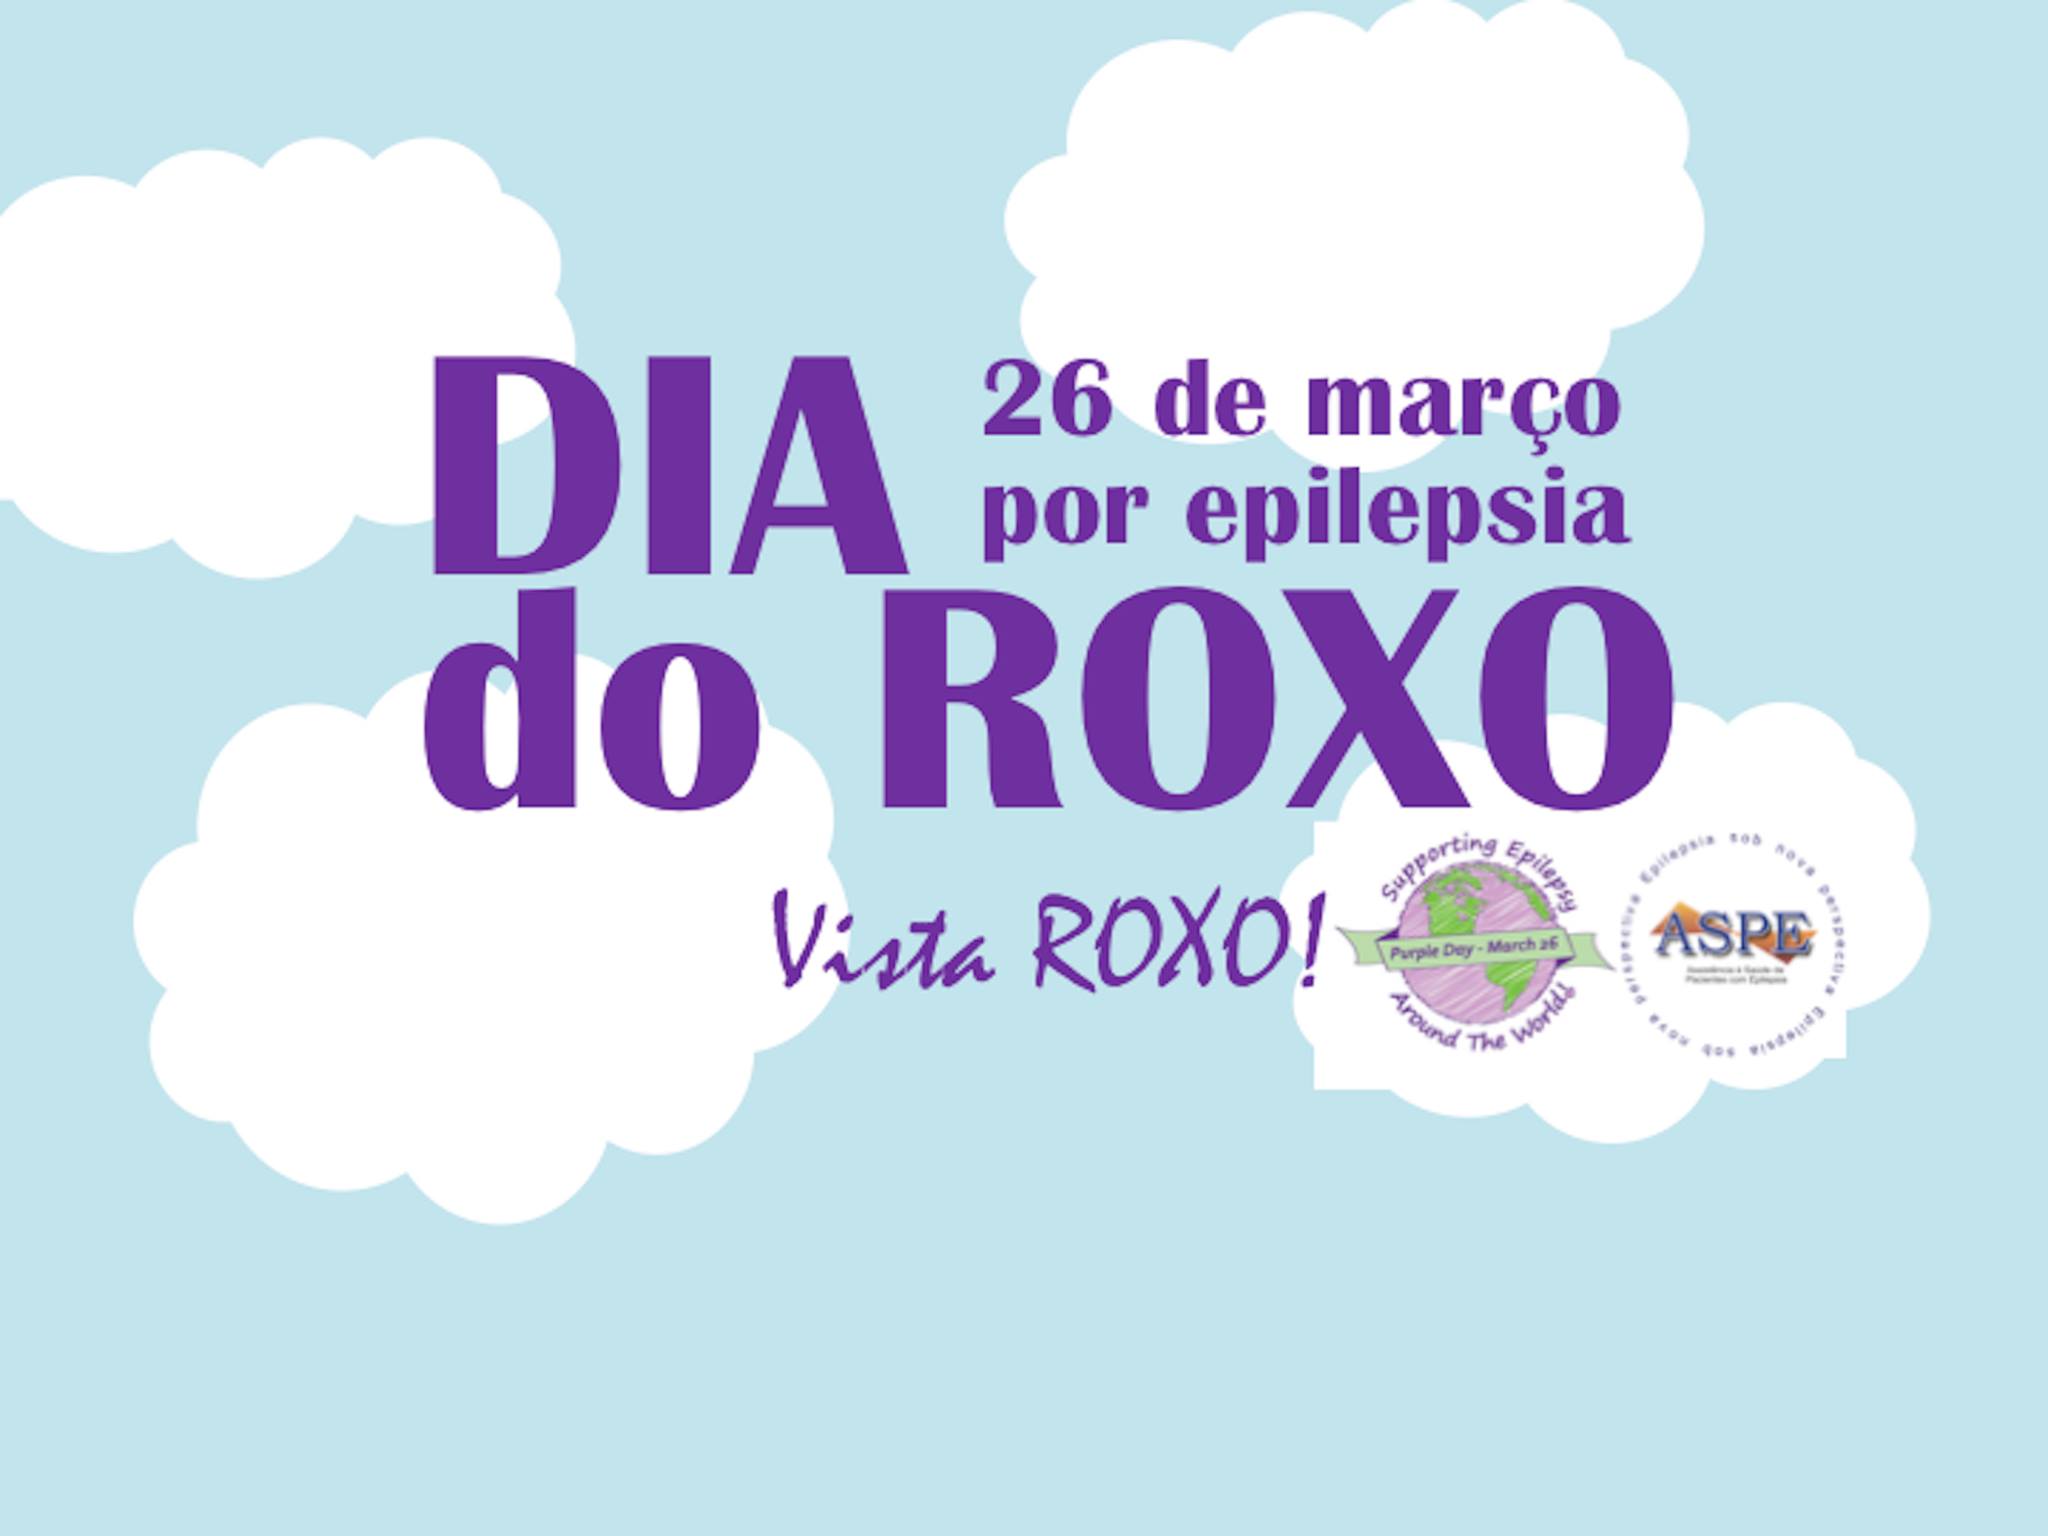 FCM - Dia do roxo para a conscientização sobre a epilepsia